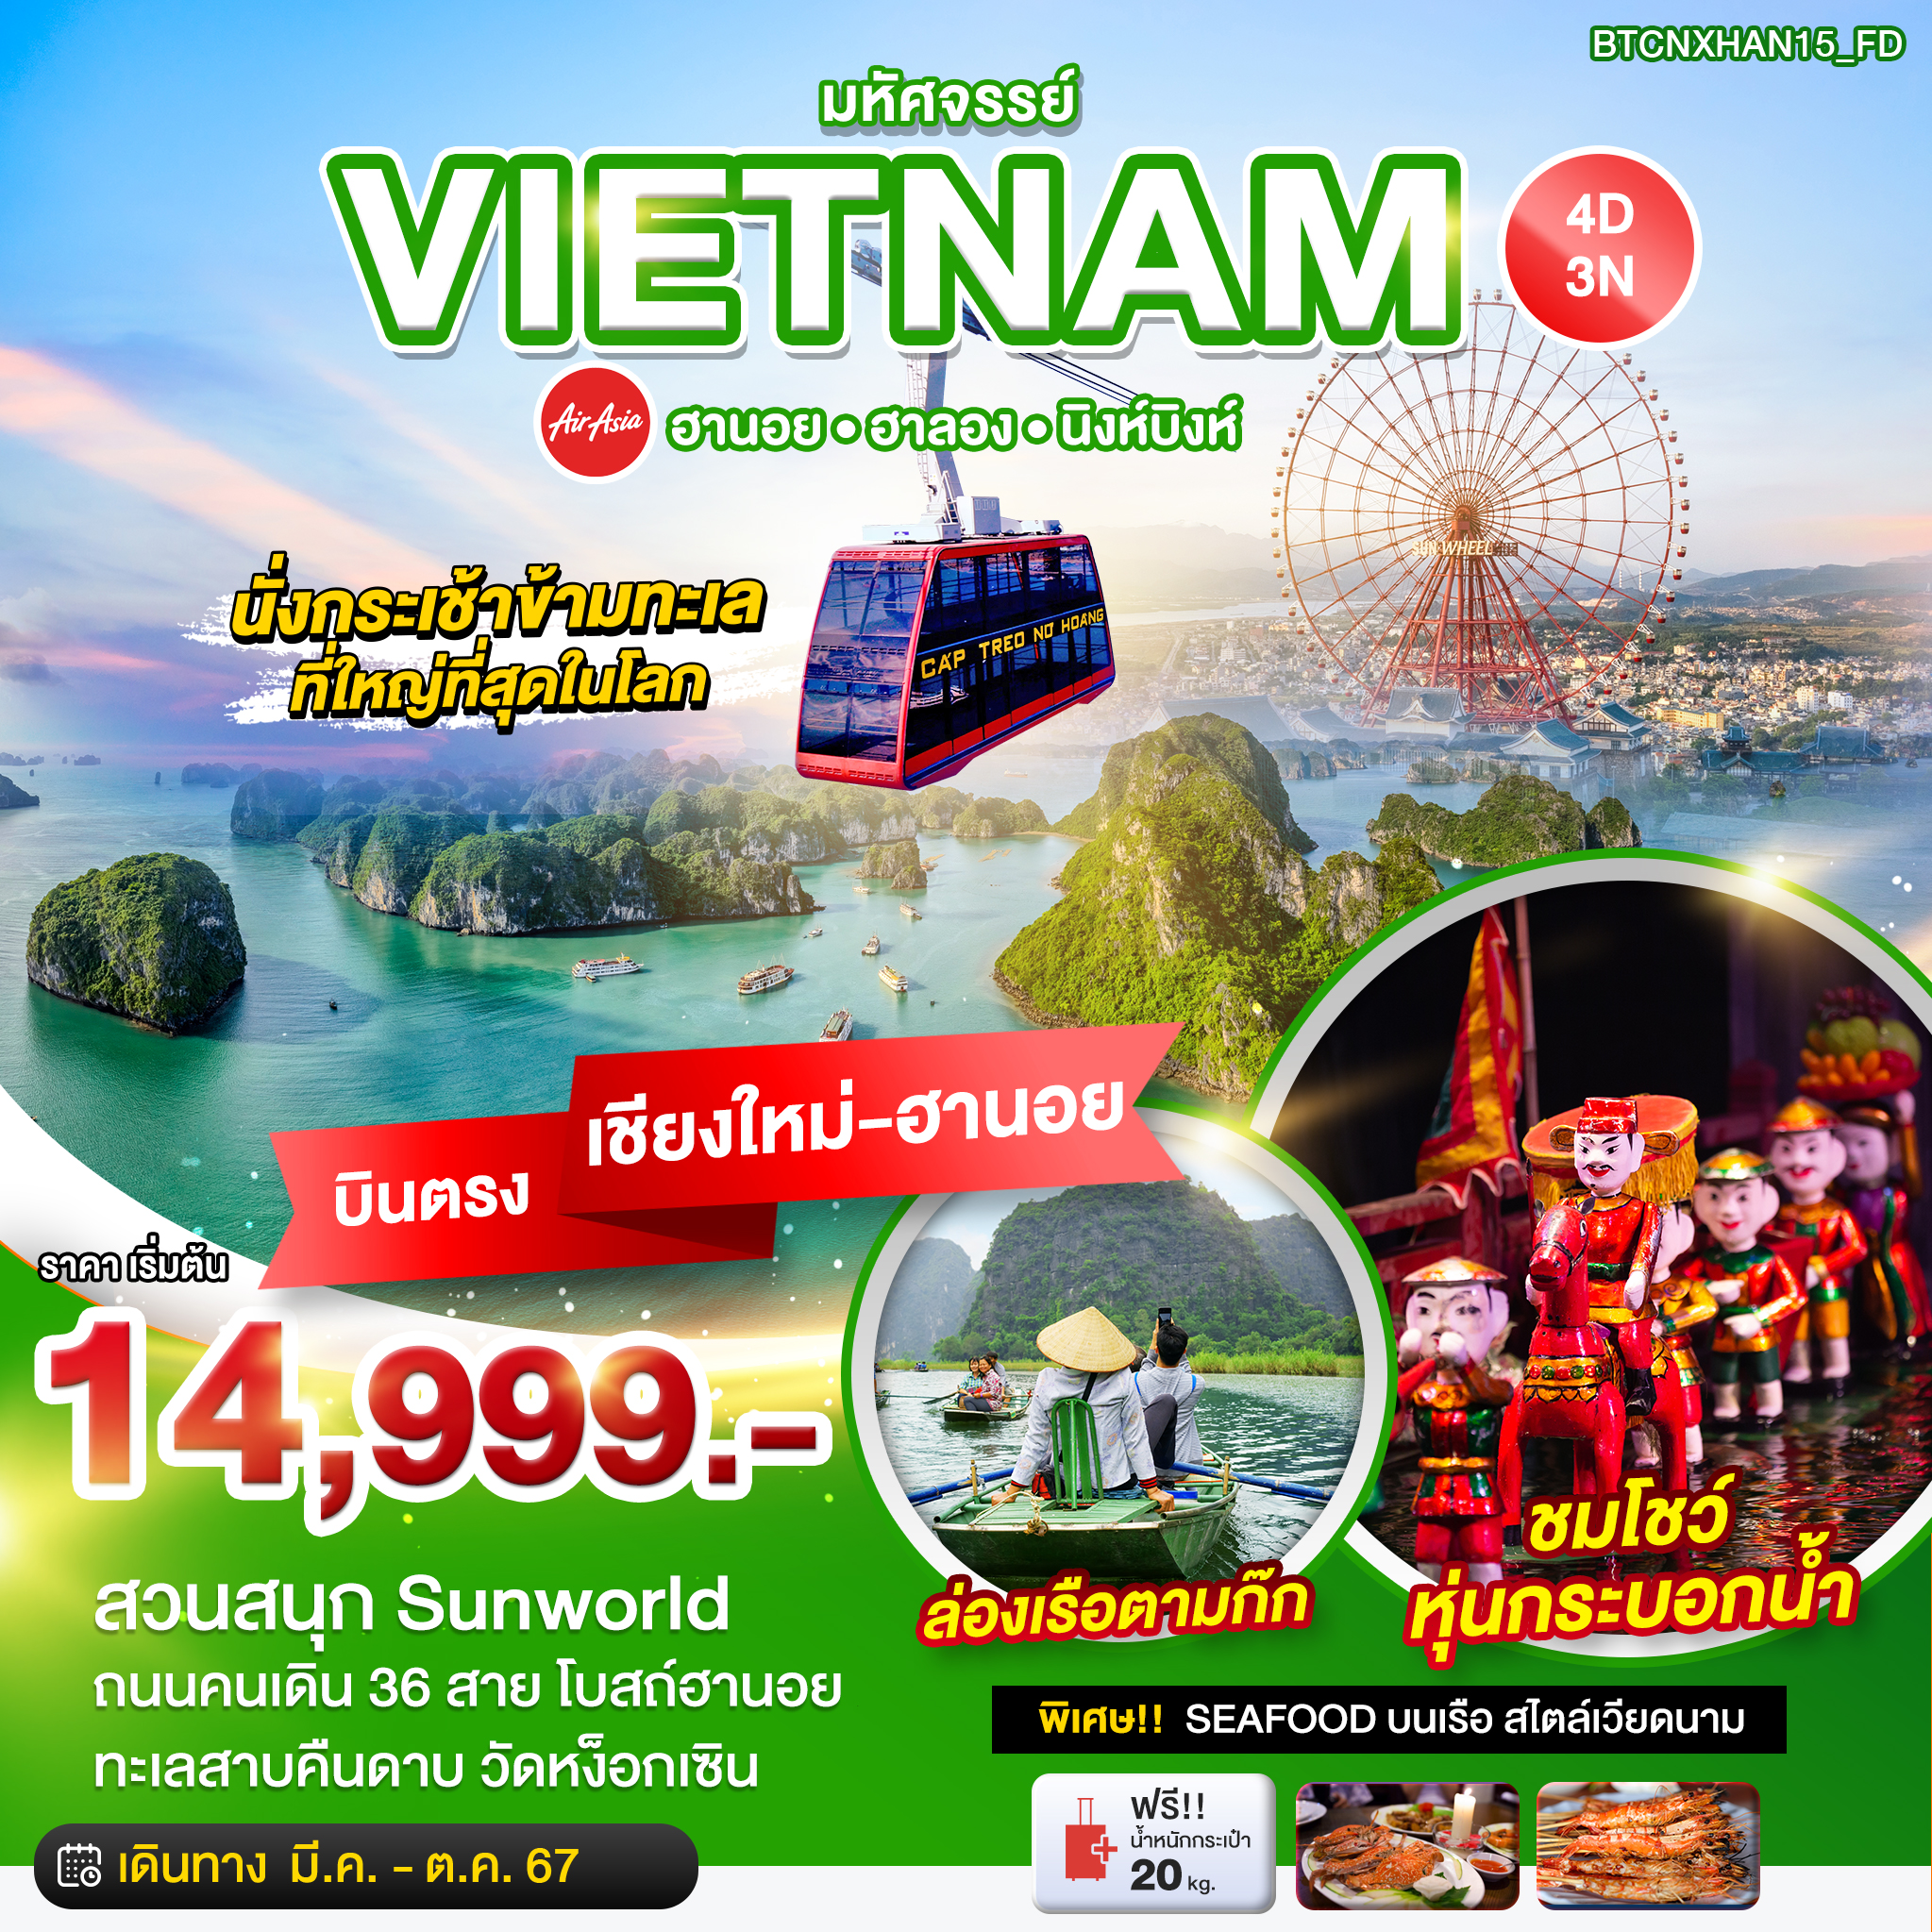 VIETNAM เวียดนามเหนือ ฮานอย ฮาลอง นิงห์บิงห์ (บินตรงเชียงใหม่-ฮานอย) 4 วัน 3 คืน เดินทาง มีนาคม - ตุลาคม 67 เริ่มต้น 14,999.- Air Asia (FD)